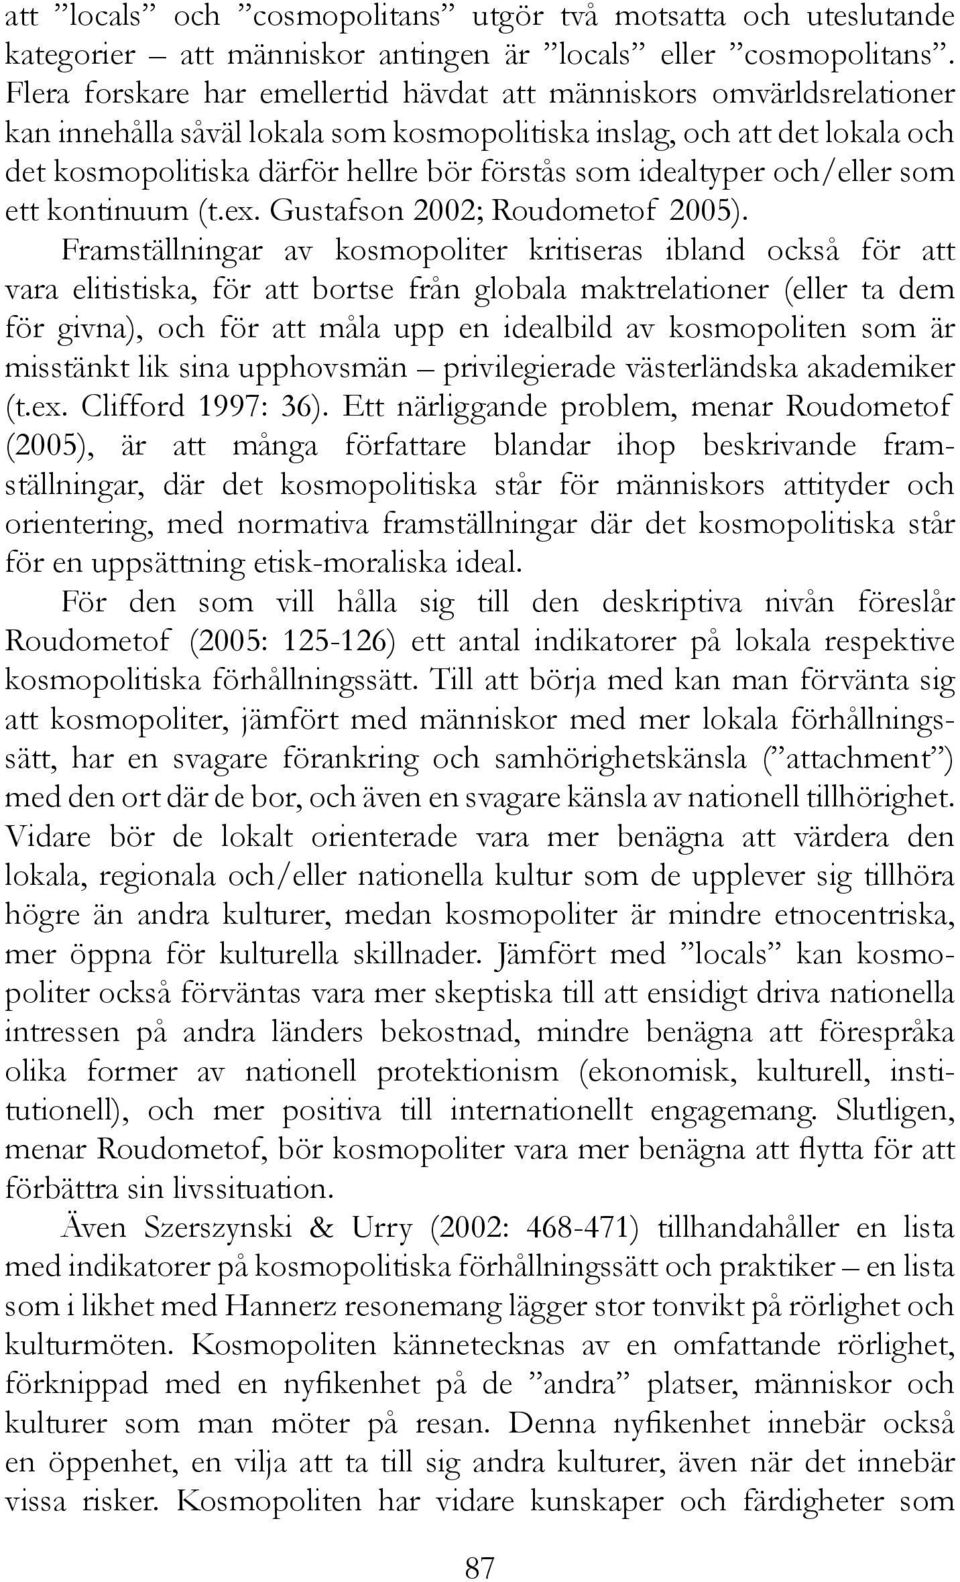 idealtyper och/eller som ett kontinuum (t.ex. Gustafson 2002; Roudometof 2005).